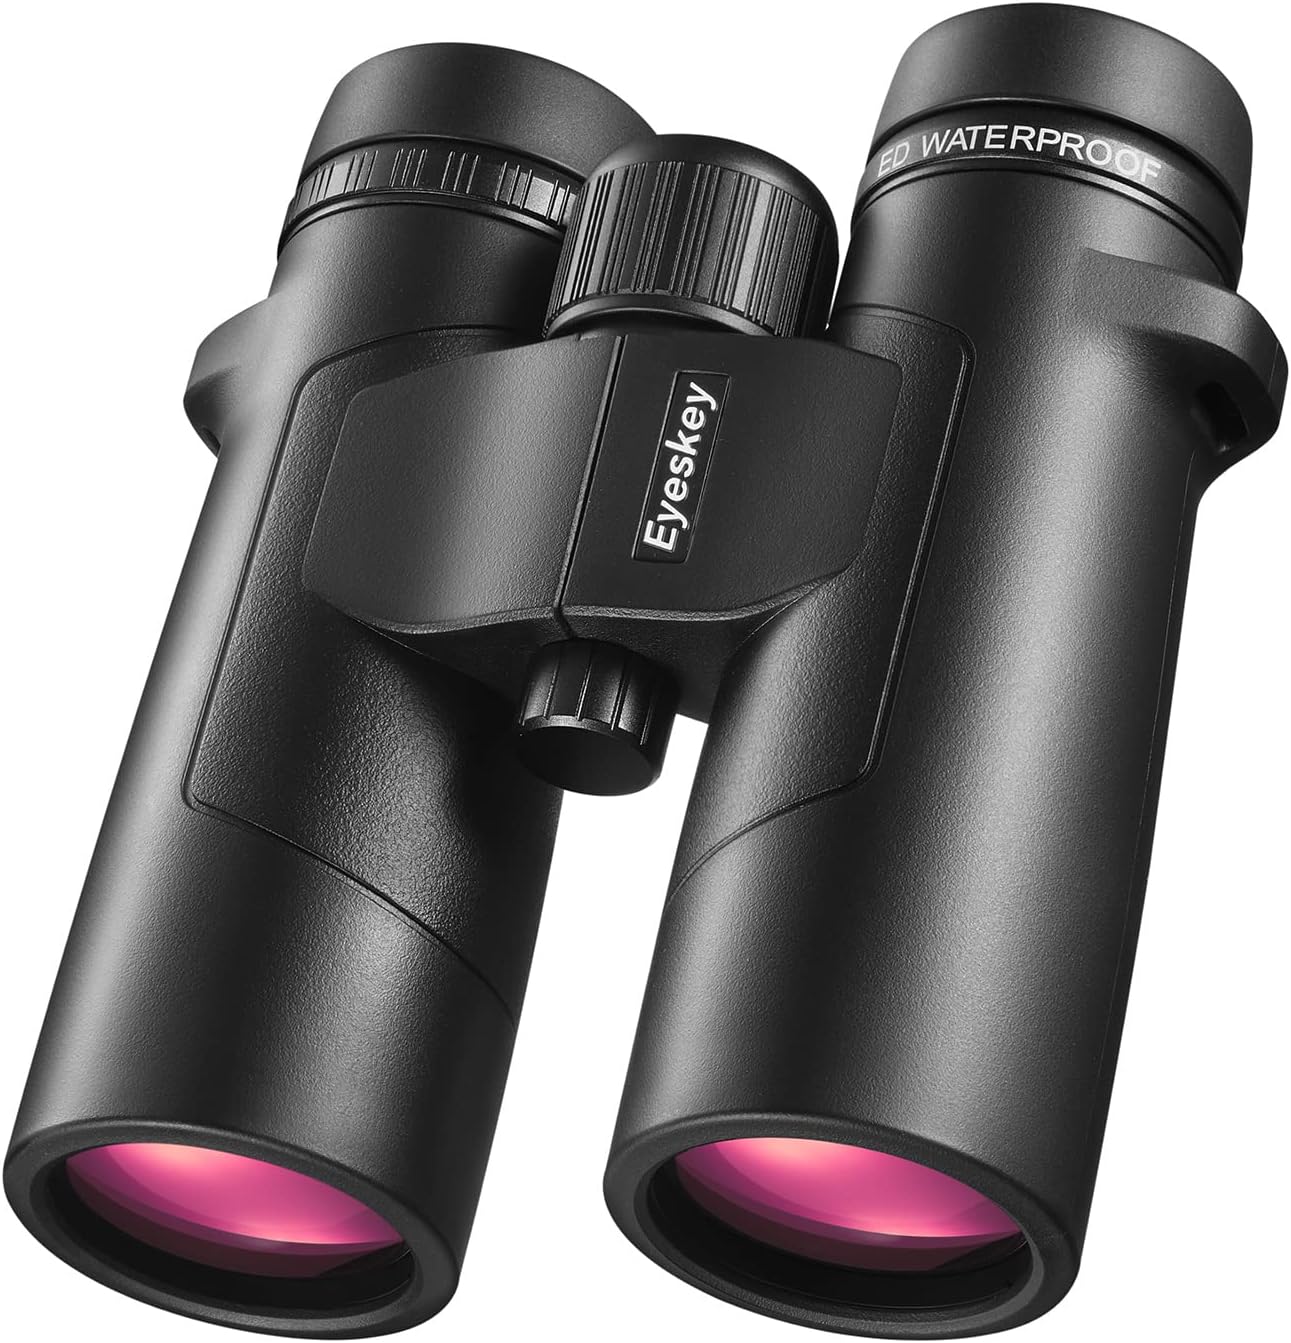 Eyeskey 12×50 ED Binoculars Review